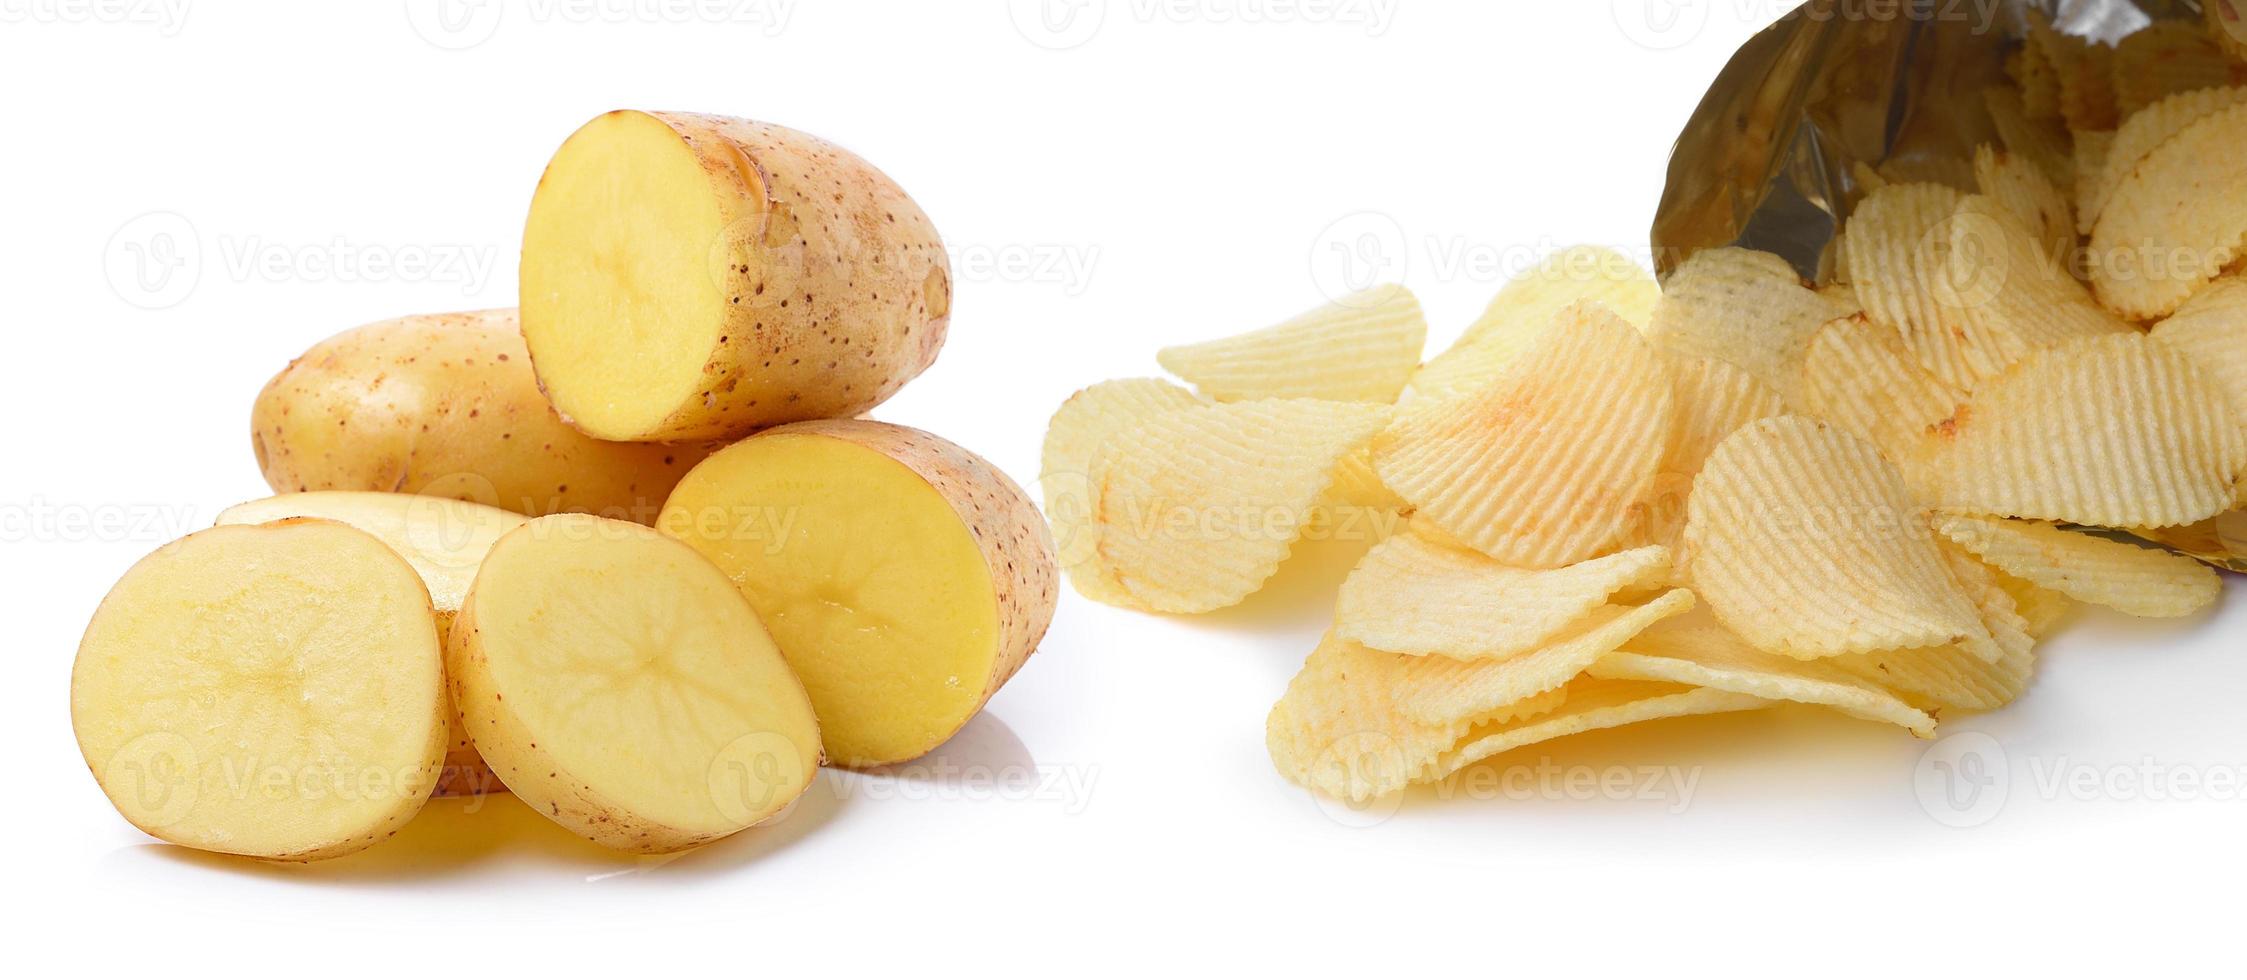 patate e patatine fritte isolate su sfondo bianco foto